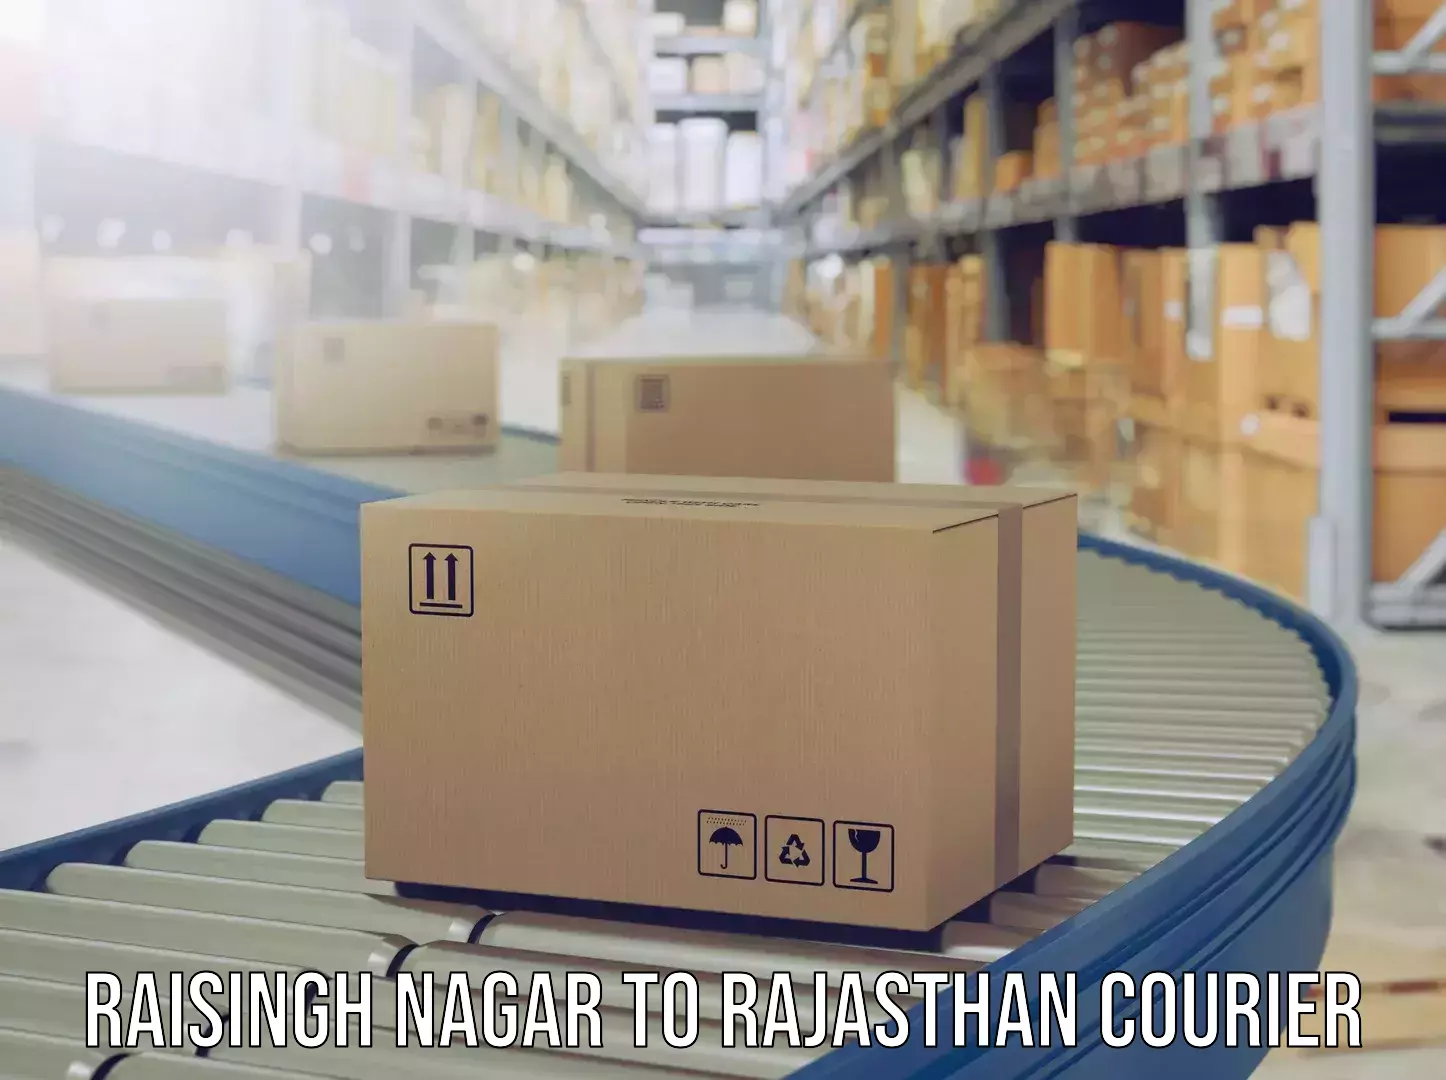 Luggage transport service in Raisingh Nagar to Rajasthan